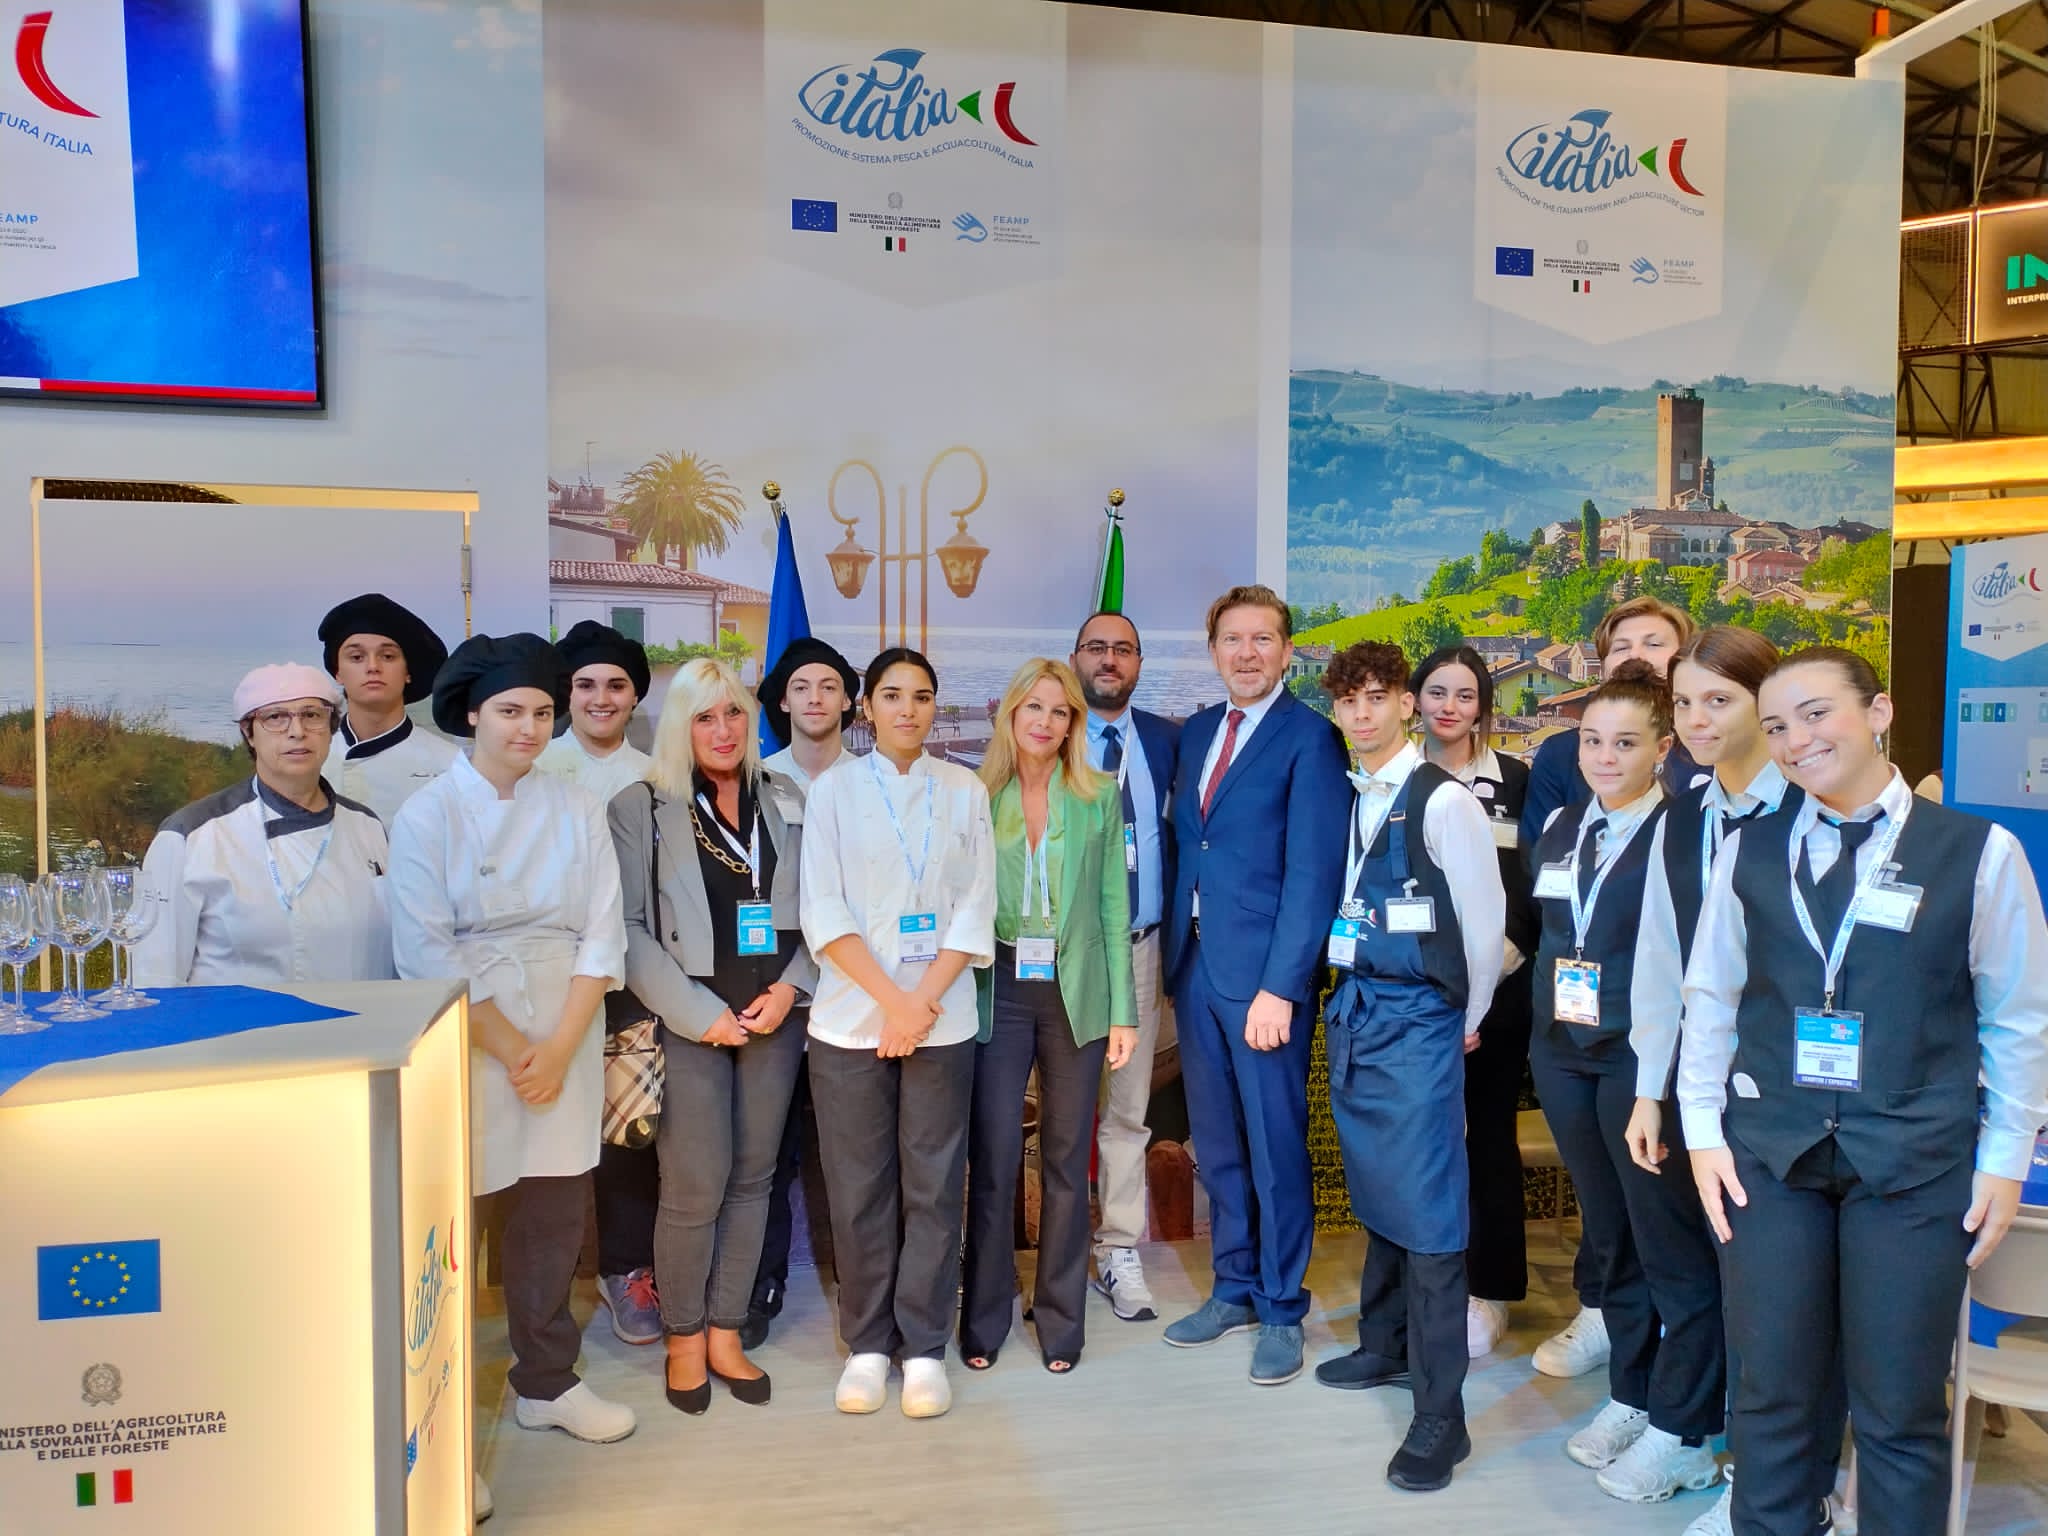 Il Console Italiano in Galizia ha incontrato gli studenti dell’Istituto “Giancardi Galilei Aicardi” di Alassio a Conxemar